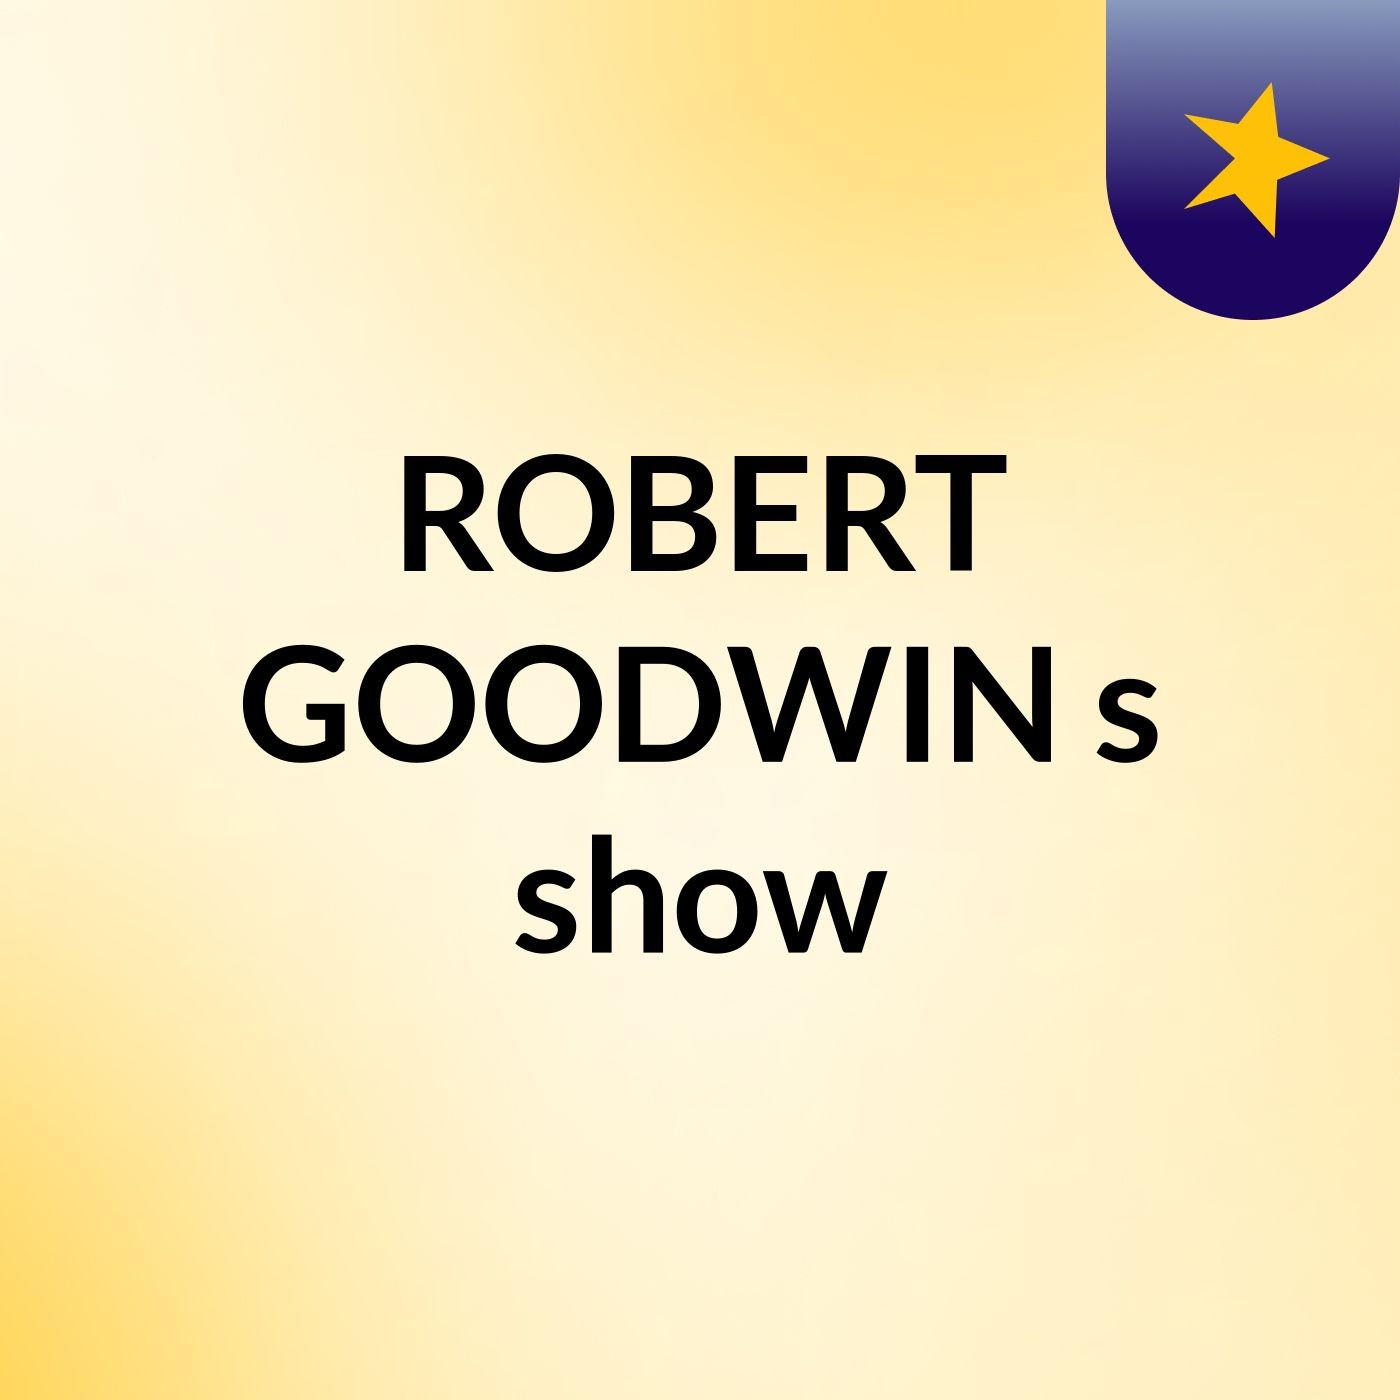 ROBERT GOODWIN's show